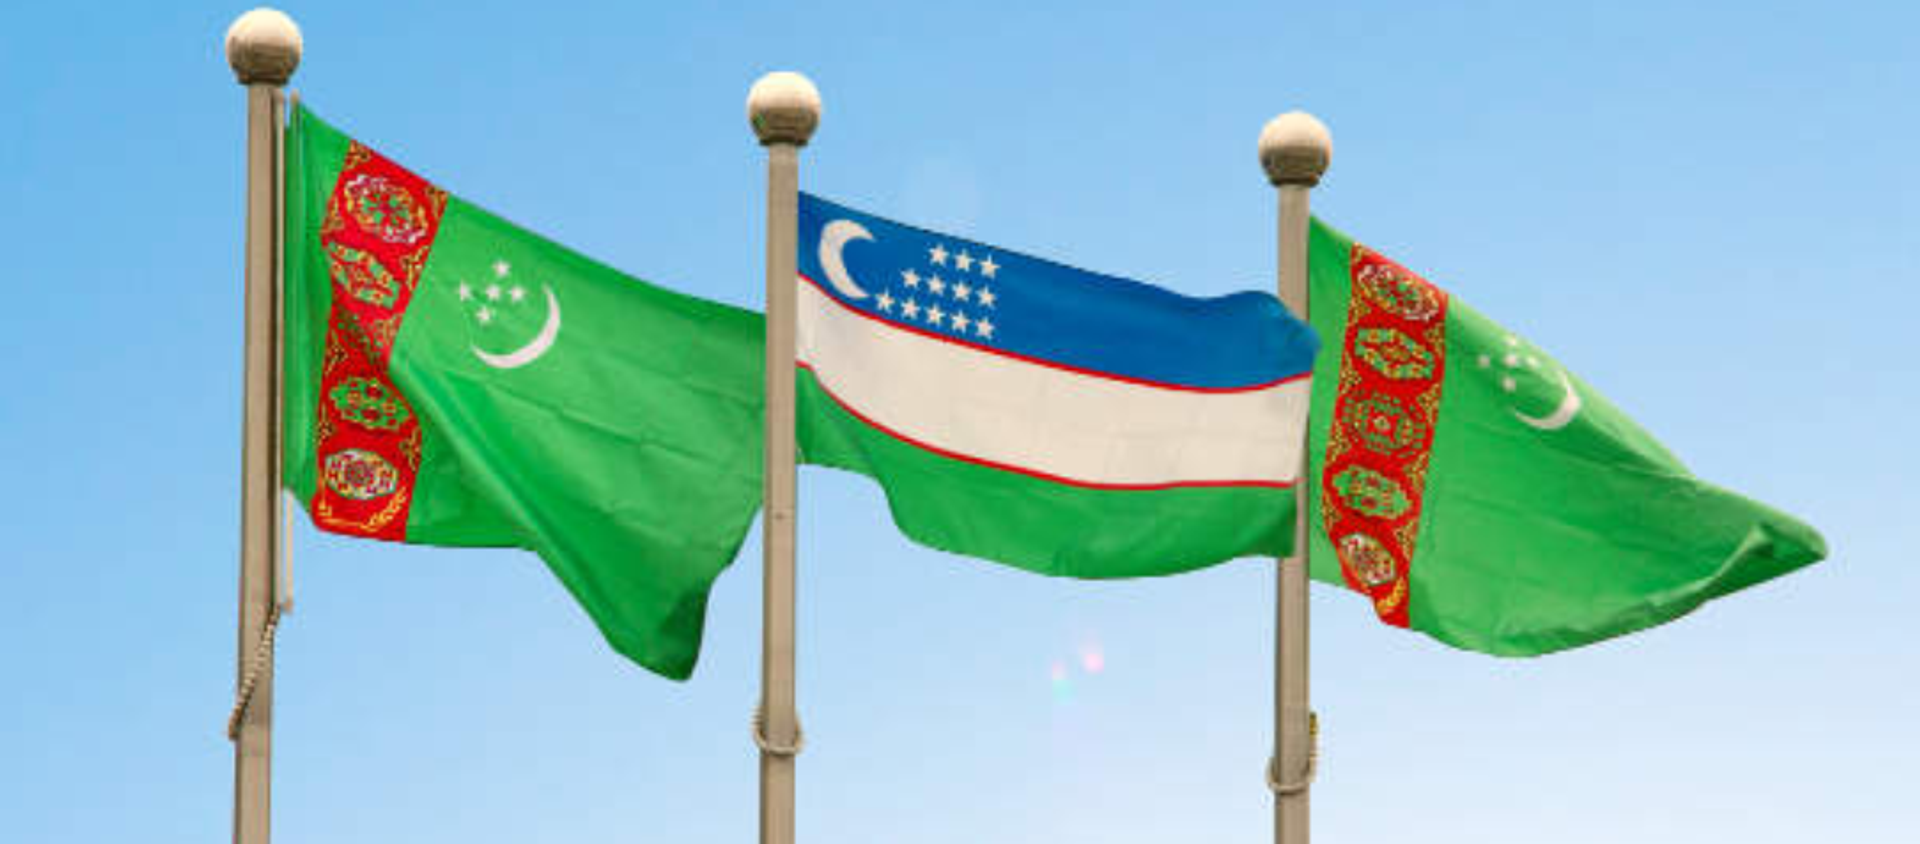 Флаги Узбекистана и Туркменистана - Sputnik Узбекистан, 1920, 15.08.2019